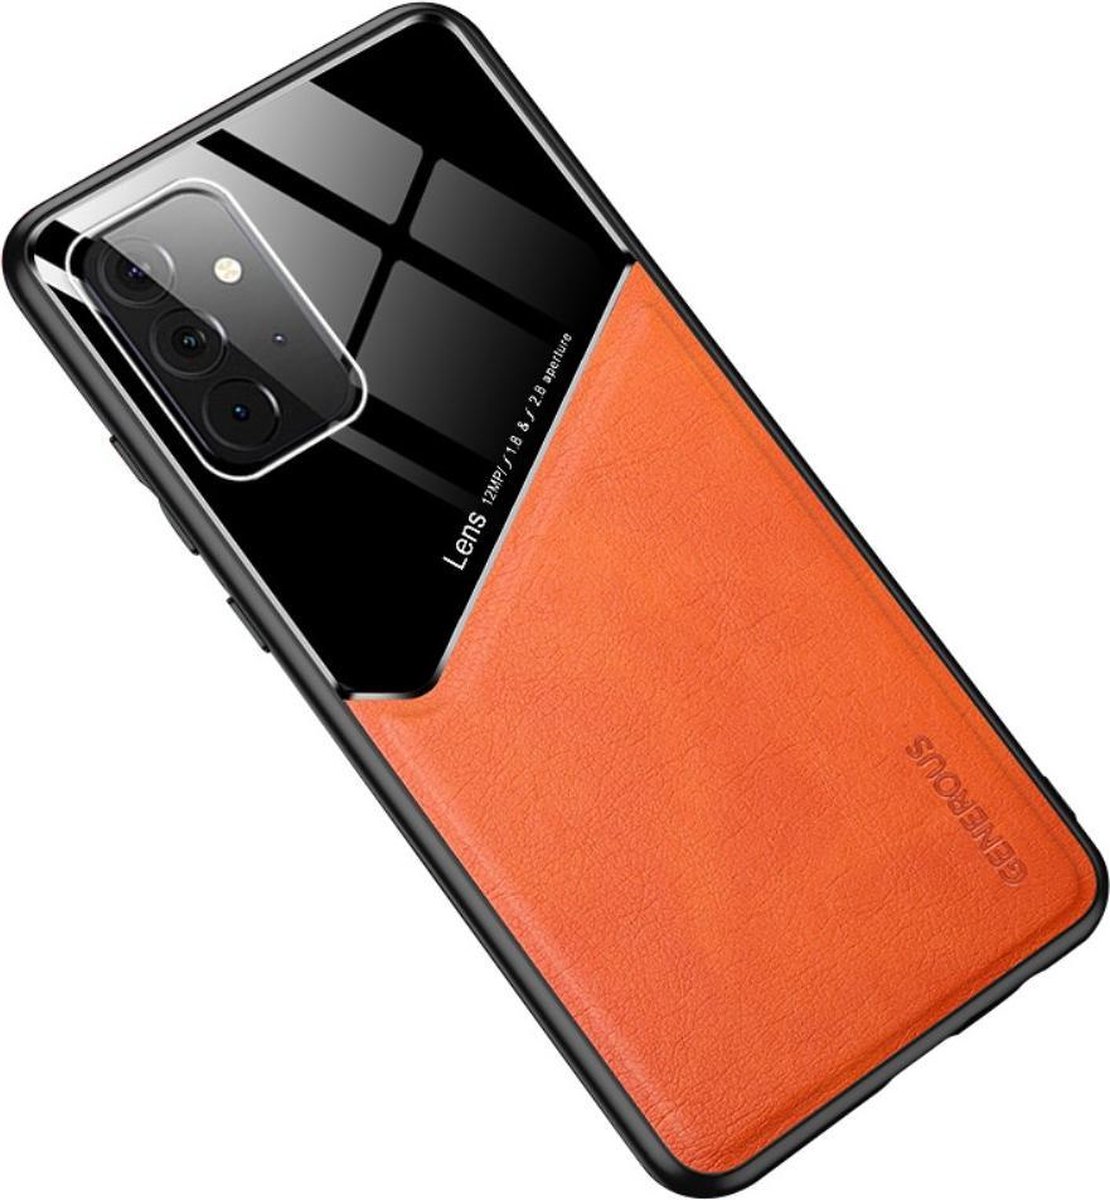 Oranje hard cover Samsung Galaxy A72 geschikt voor magnetische autohouder